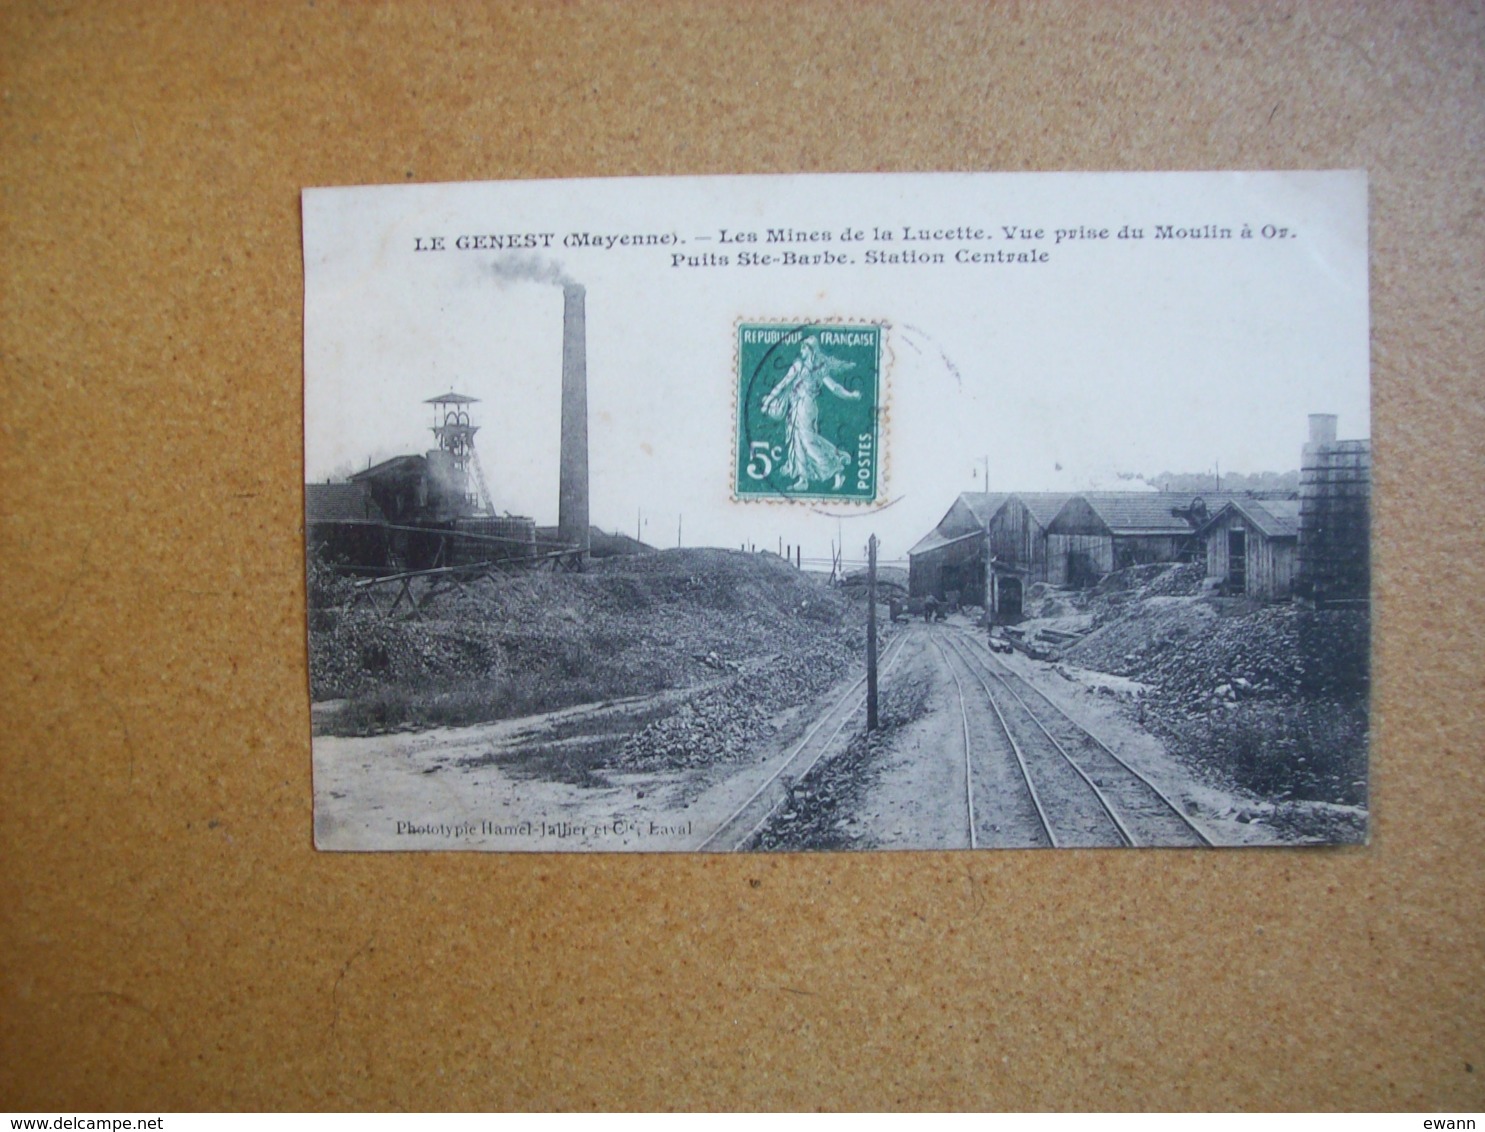 Carte Postale Ancienne Du Genest: Les Mines De La Lucette - Vue Prise Du Moulin à Or - Puits Ste-Barbe-Station Centrale - Le Genest Saint Isle